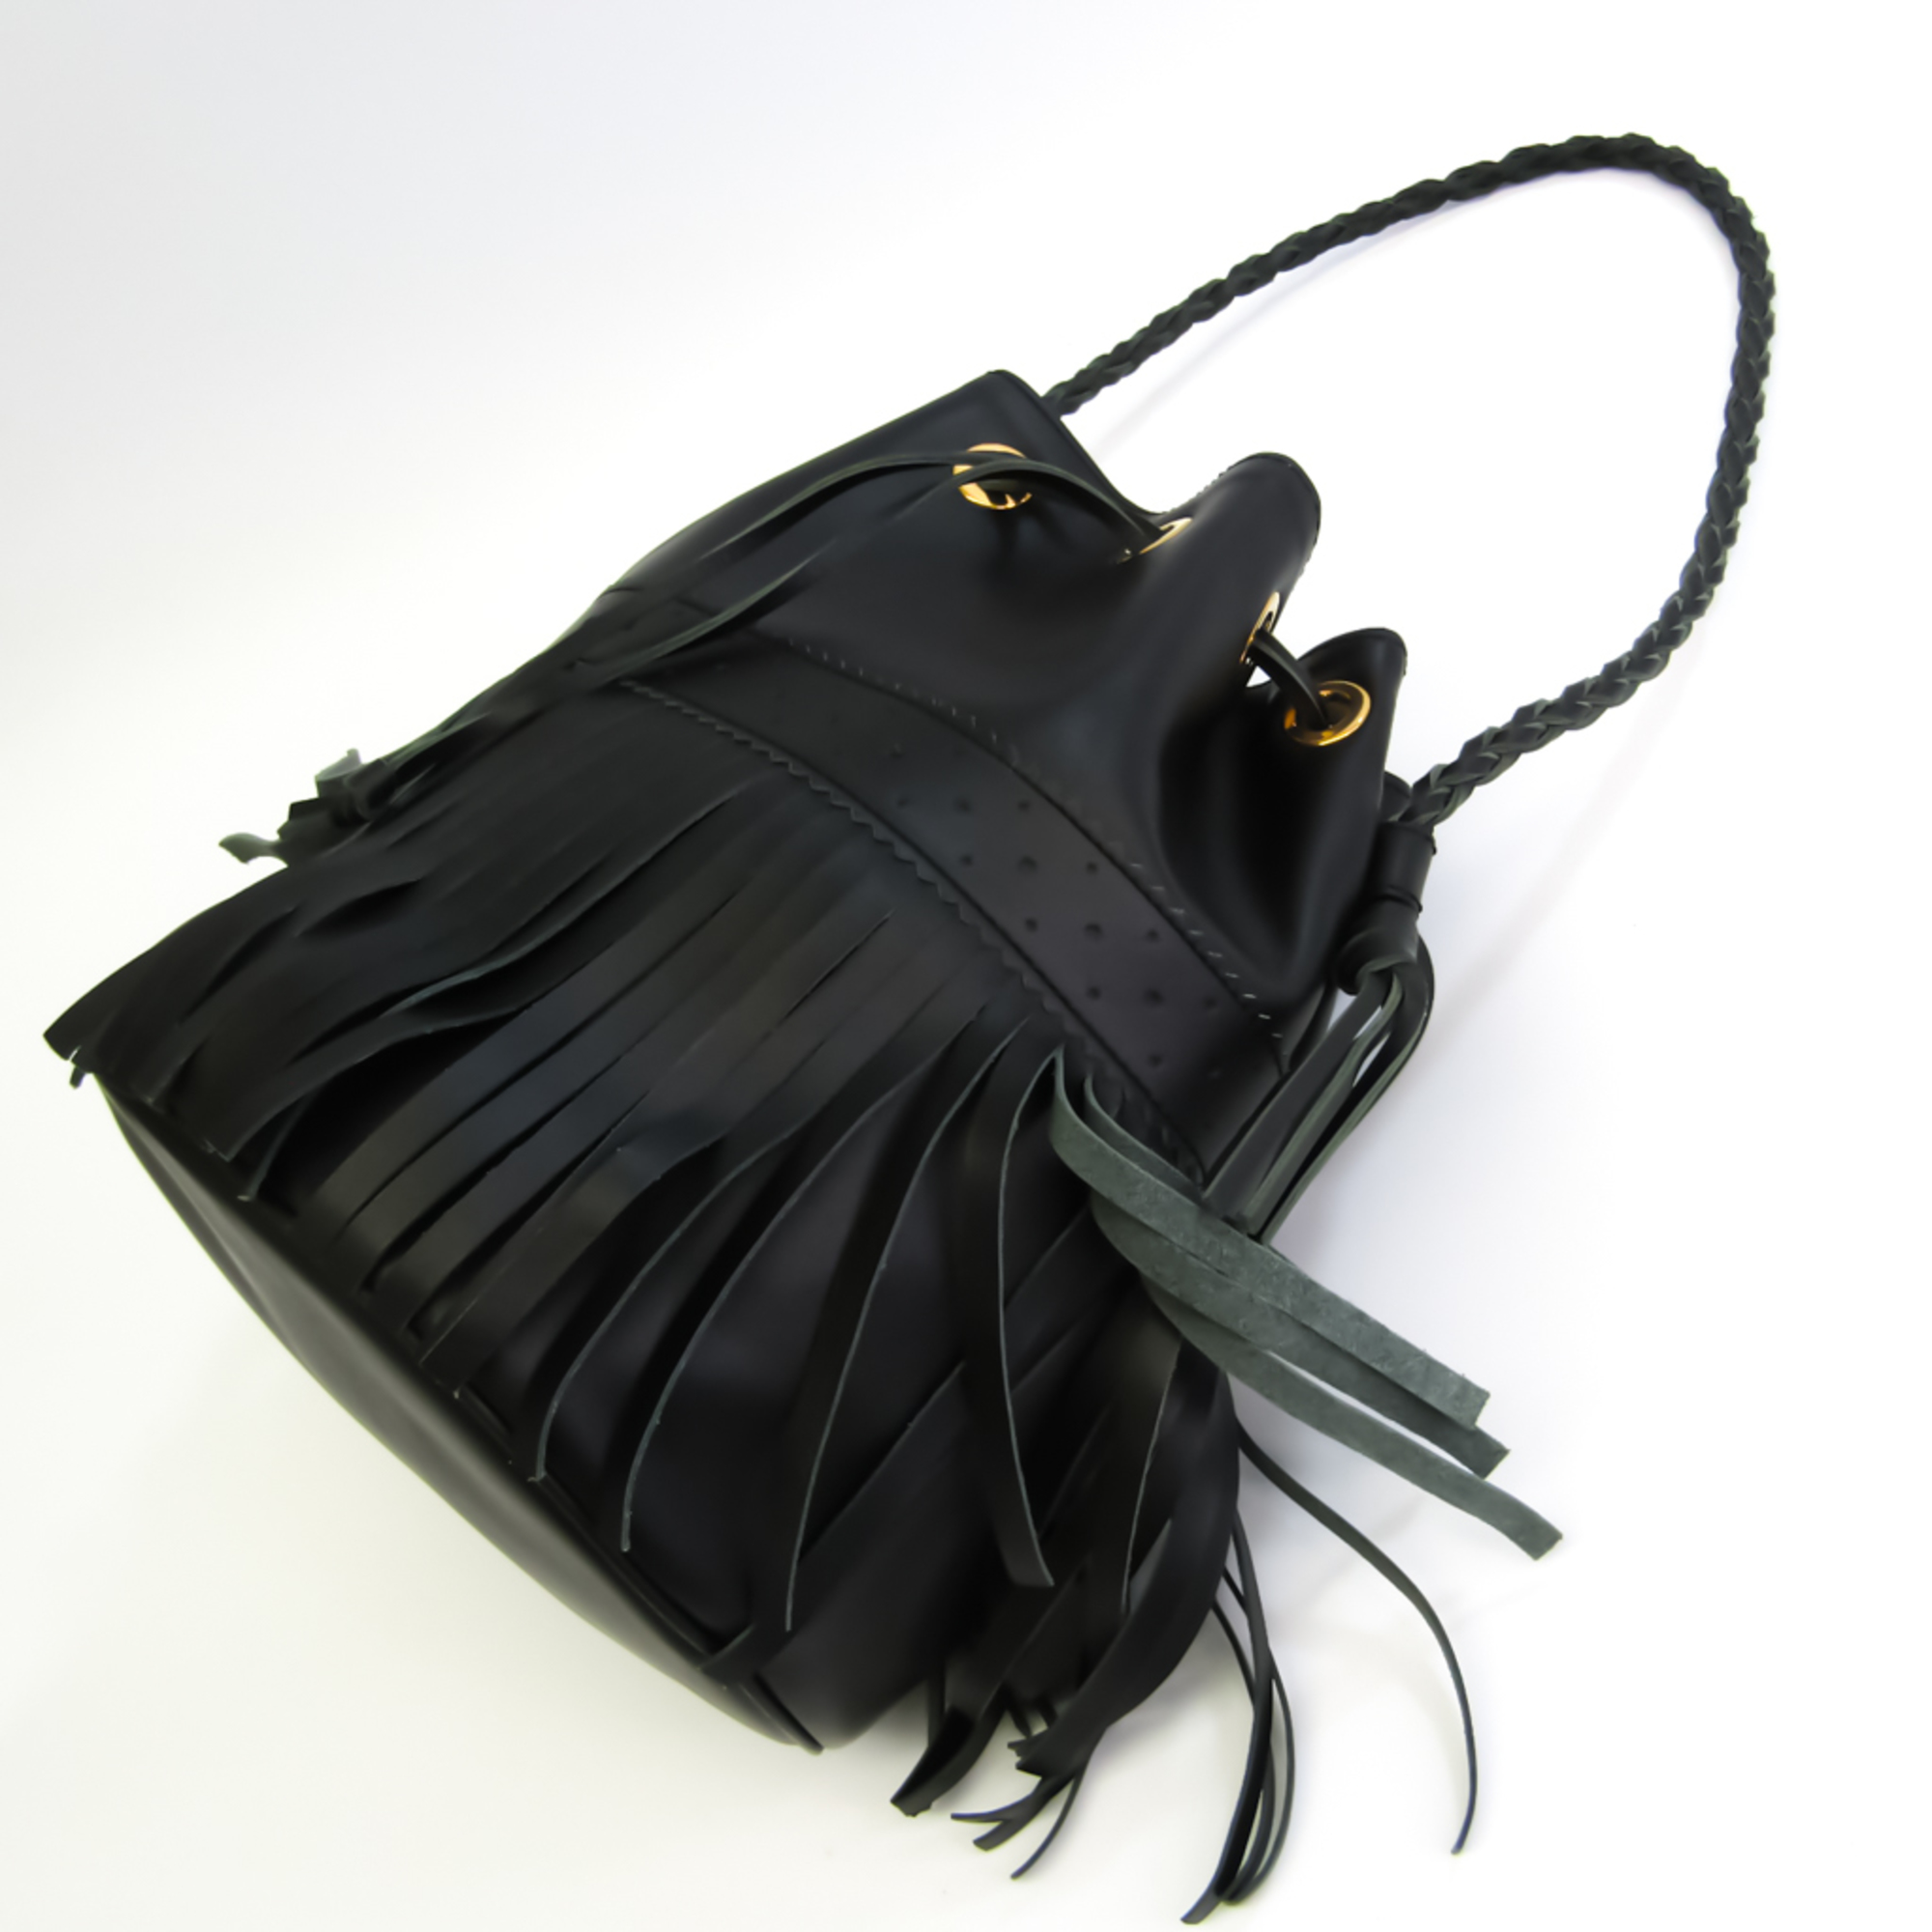 J&M Davidson Carnival L Women's Leather Shoulder Bag Black